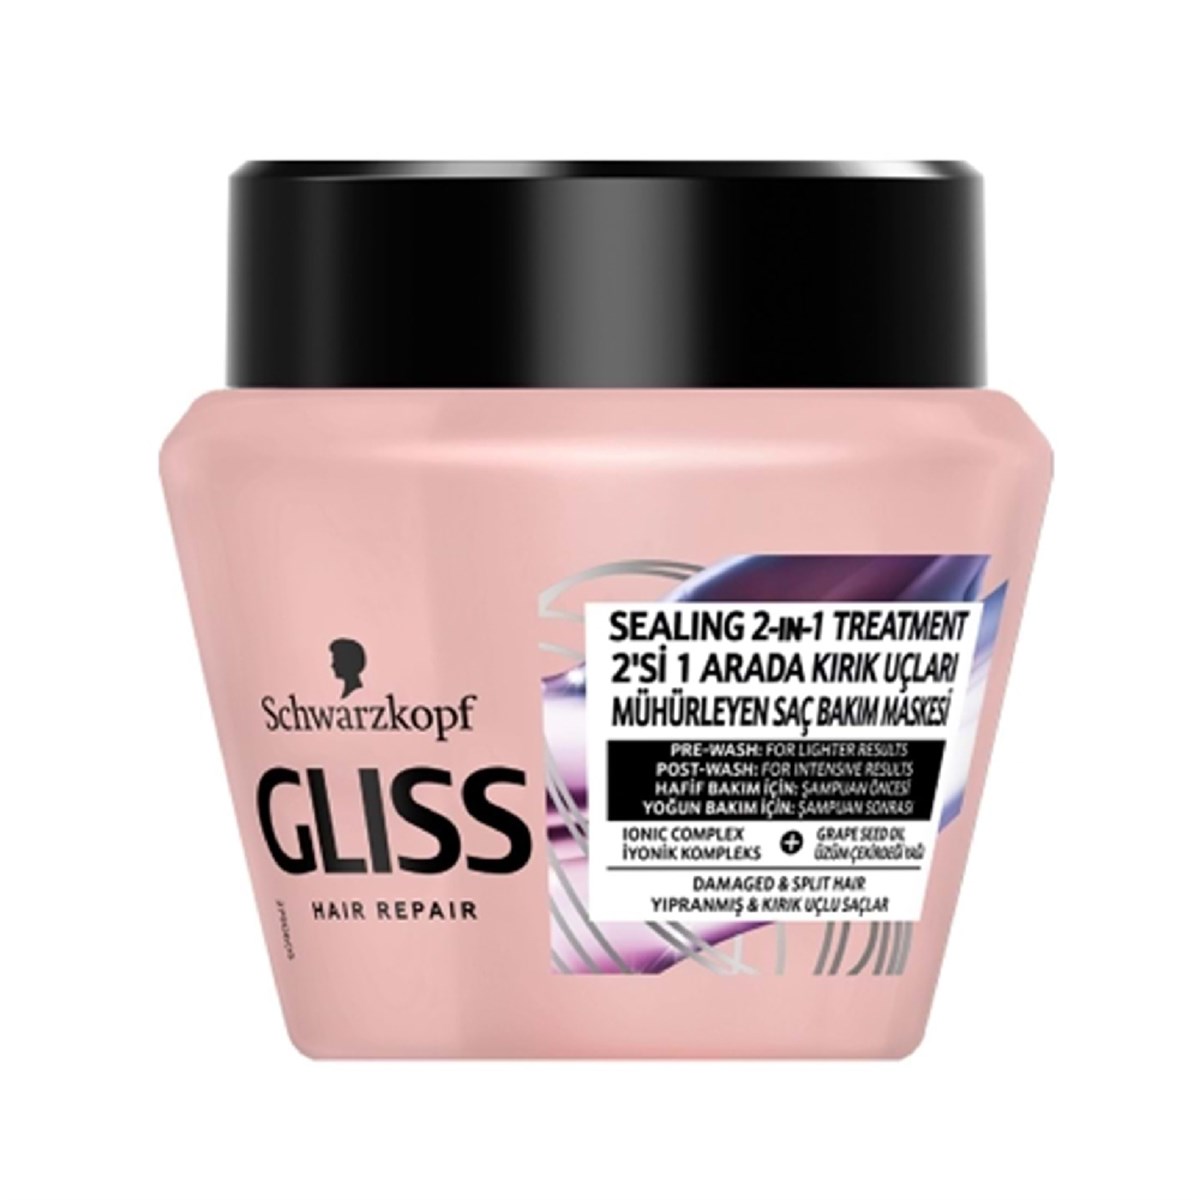 Gliss Split Hair Miracle 2in1 Kırık Uçları Mühürleyen Saç Bakım Maskesi  300ml - Platin